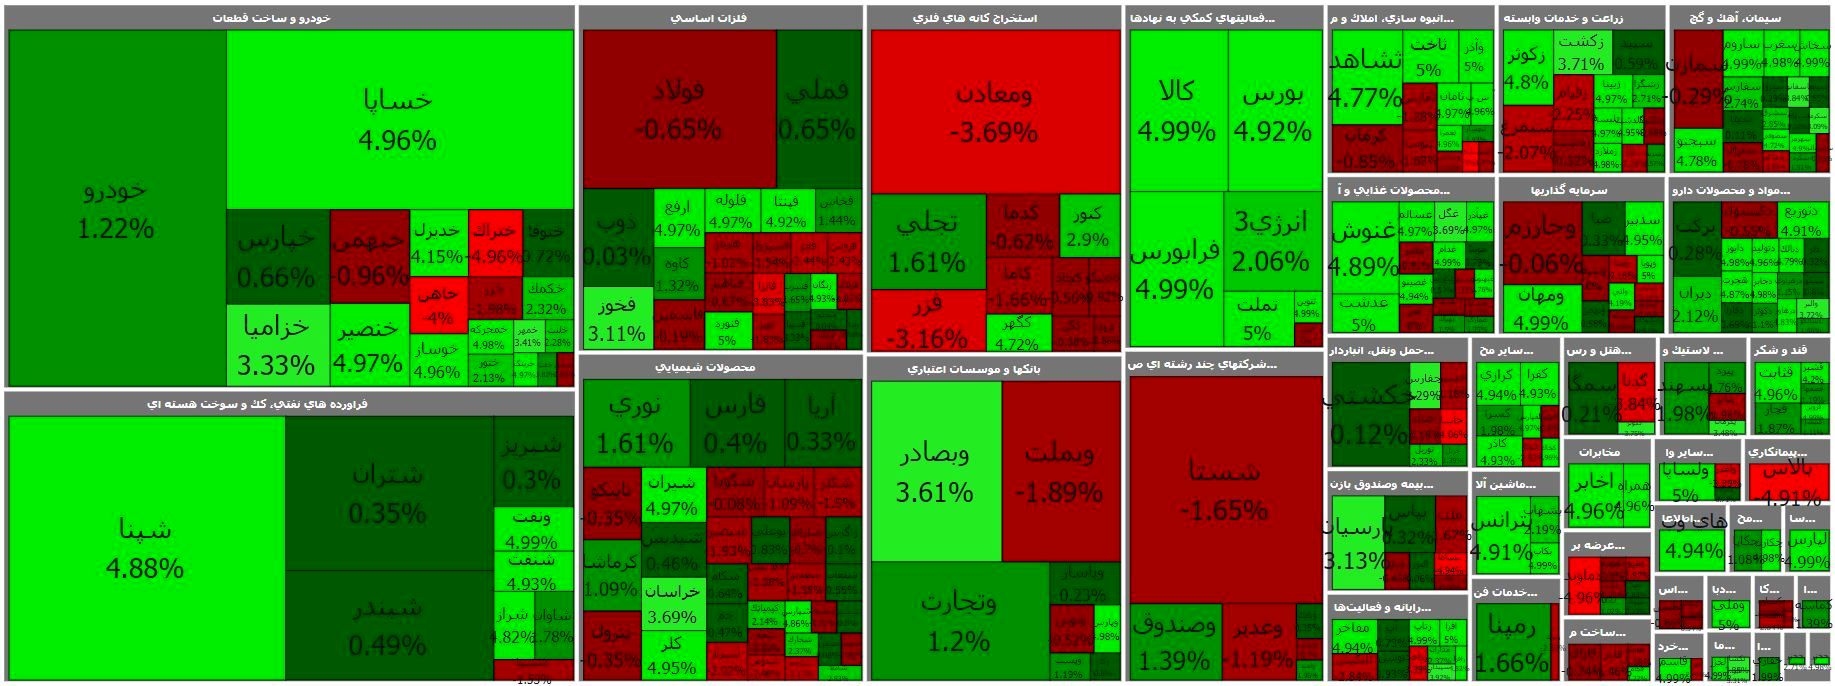 رونق معاملات حقیقی ها در بورس تهران / کدام سهم ها بیشترین بازدهی را داشتند؟